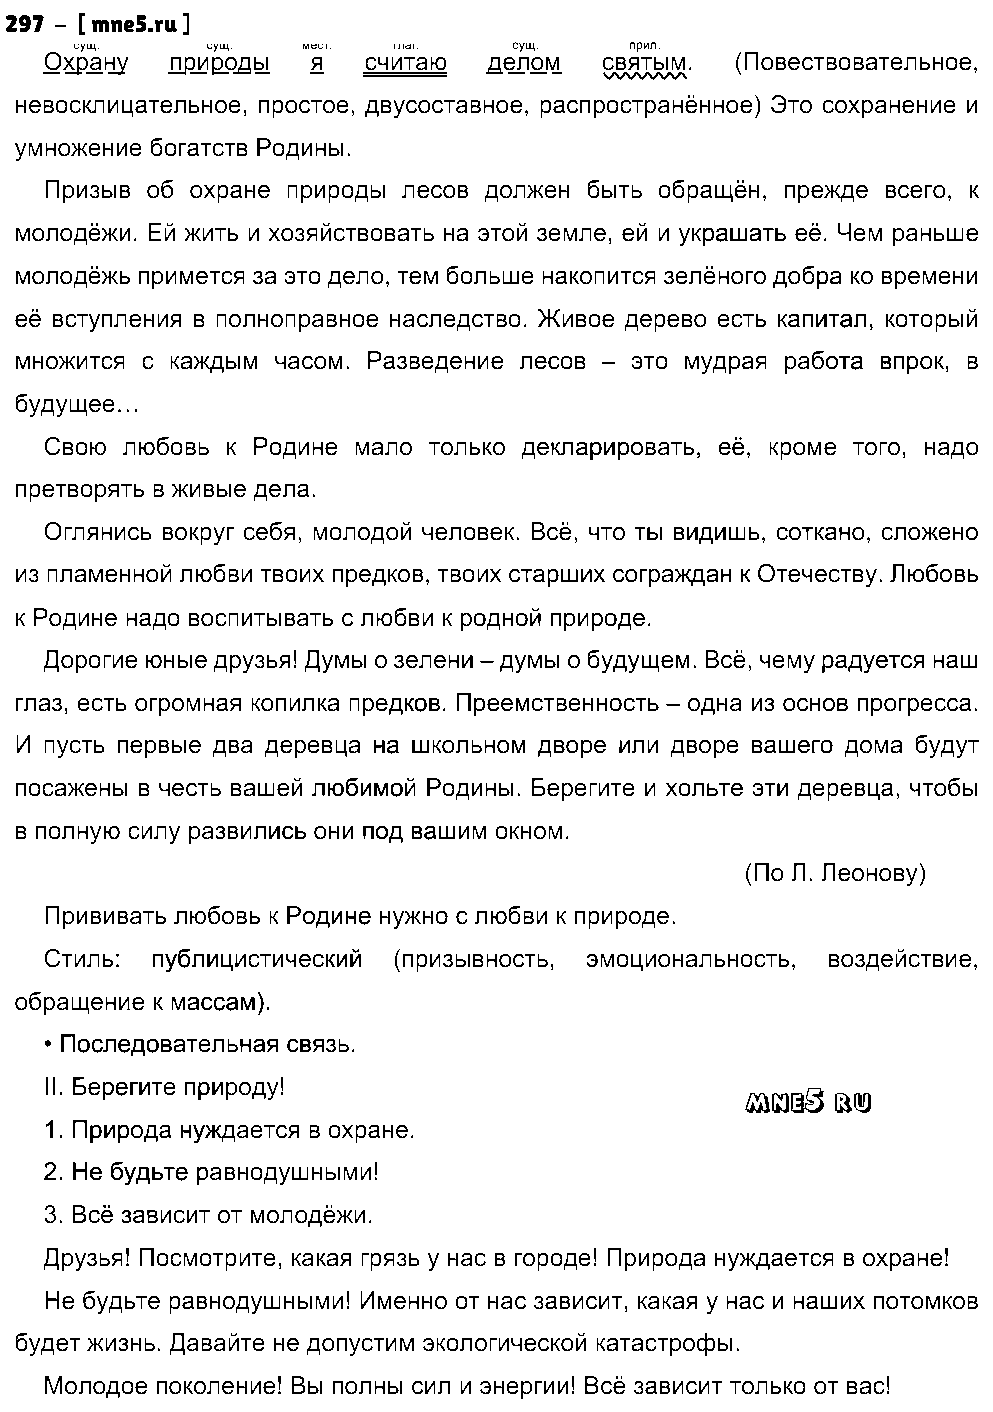 ГДЗ Русский язык 8 класс - 297